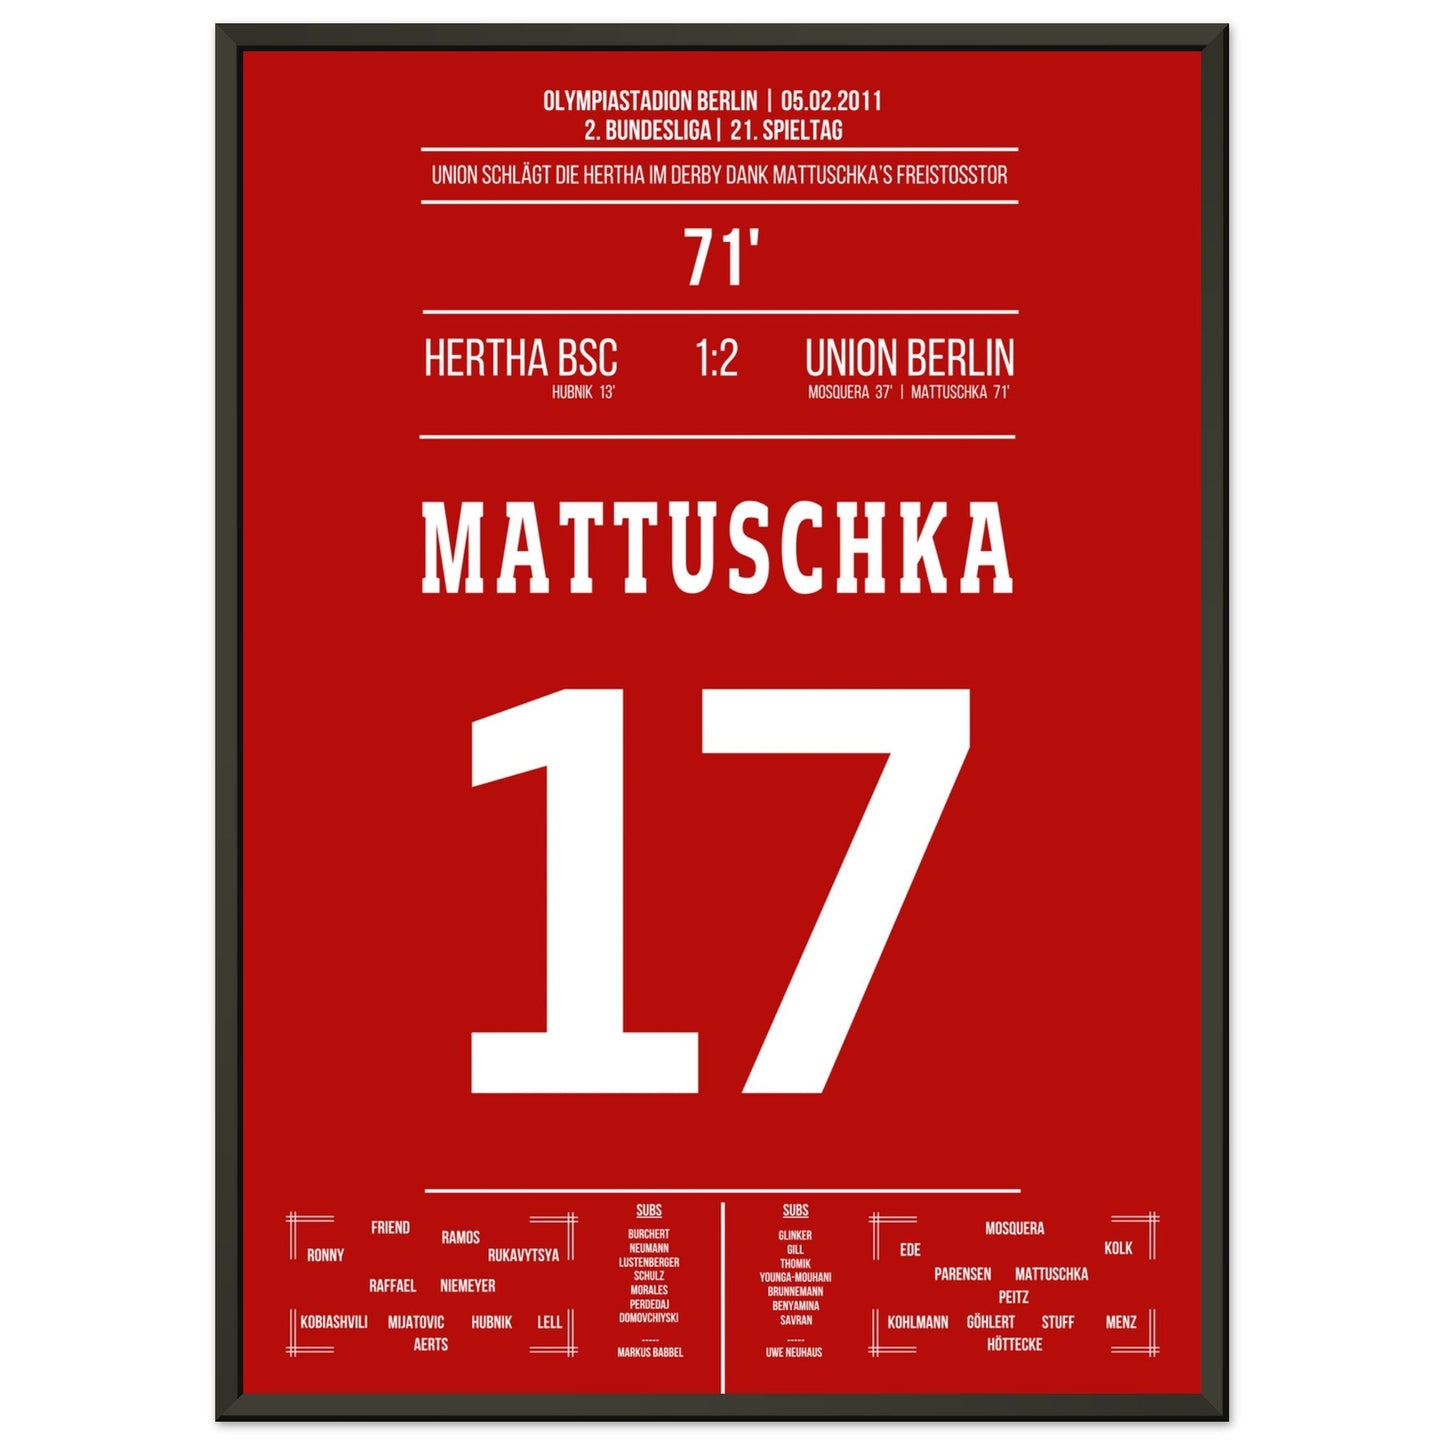 Mattuschka's Freistoßtor zum Derby-Sieg